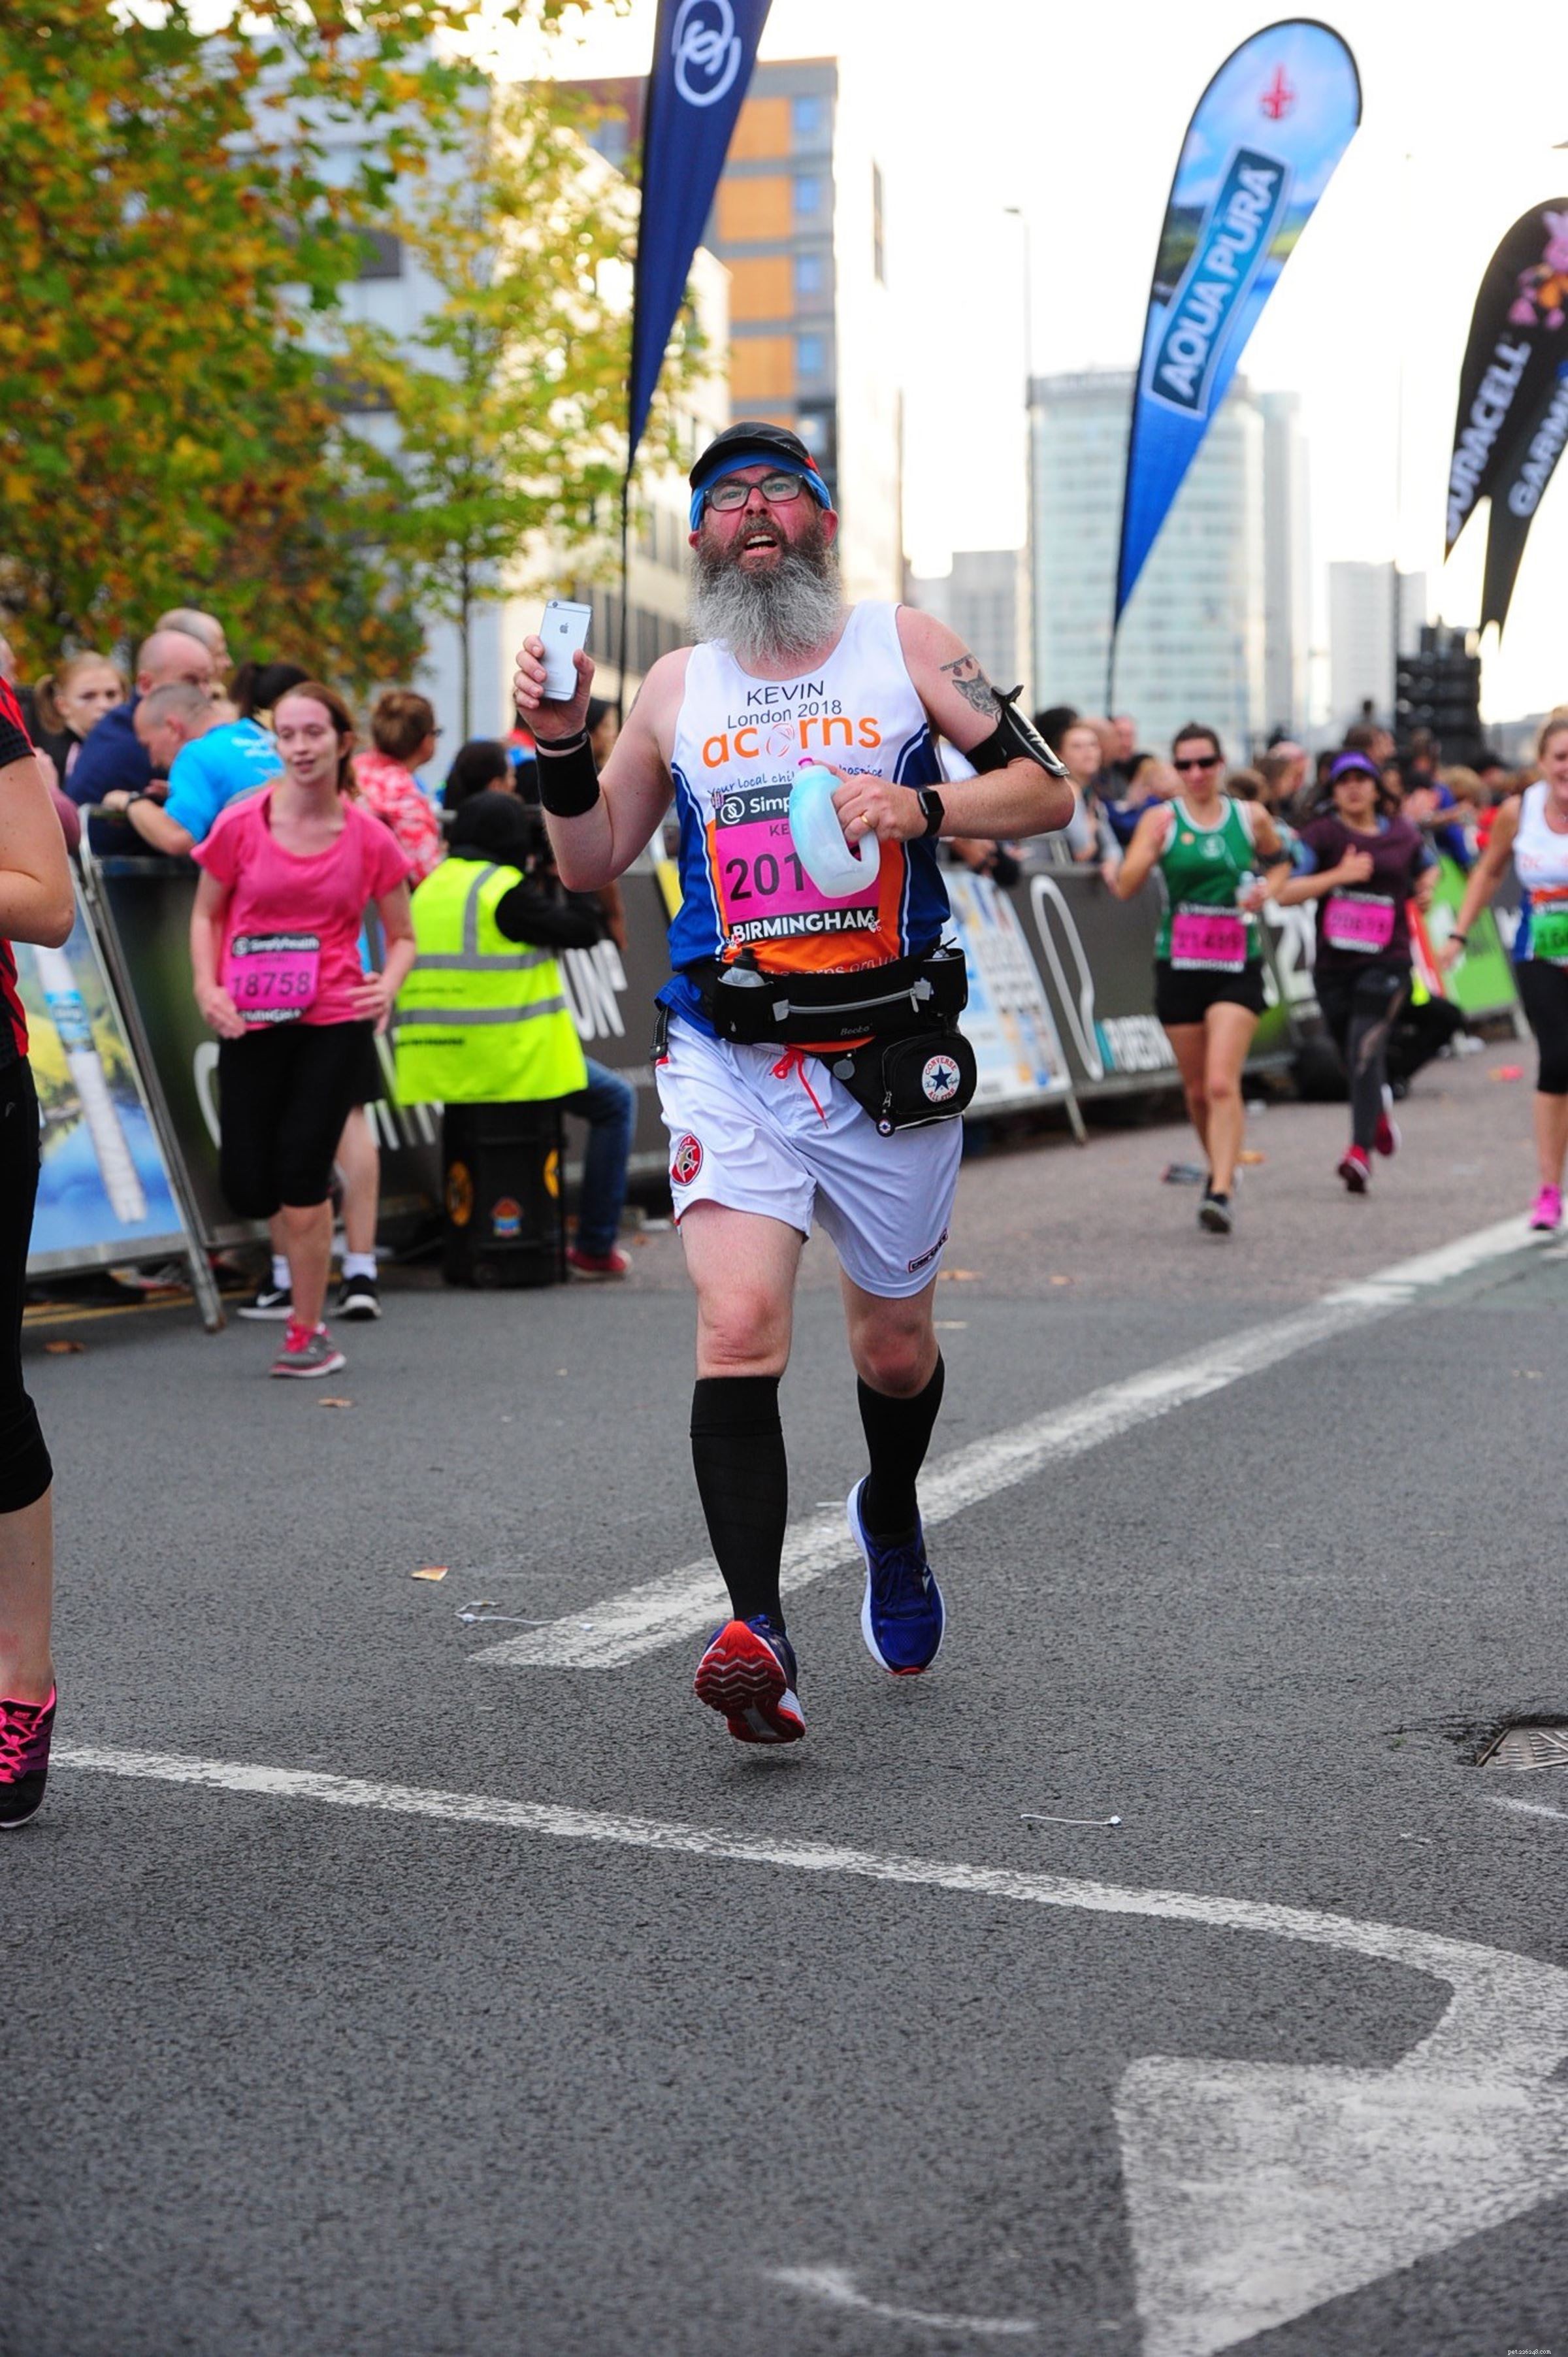 Kevin the Pirate tackar sin träning för London Marathon för att han räddade hans liv, och nu gör han allt igen för att samla in pengar till katter 